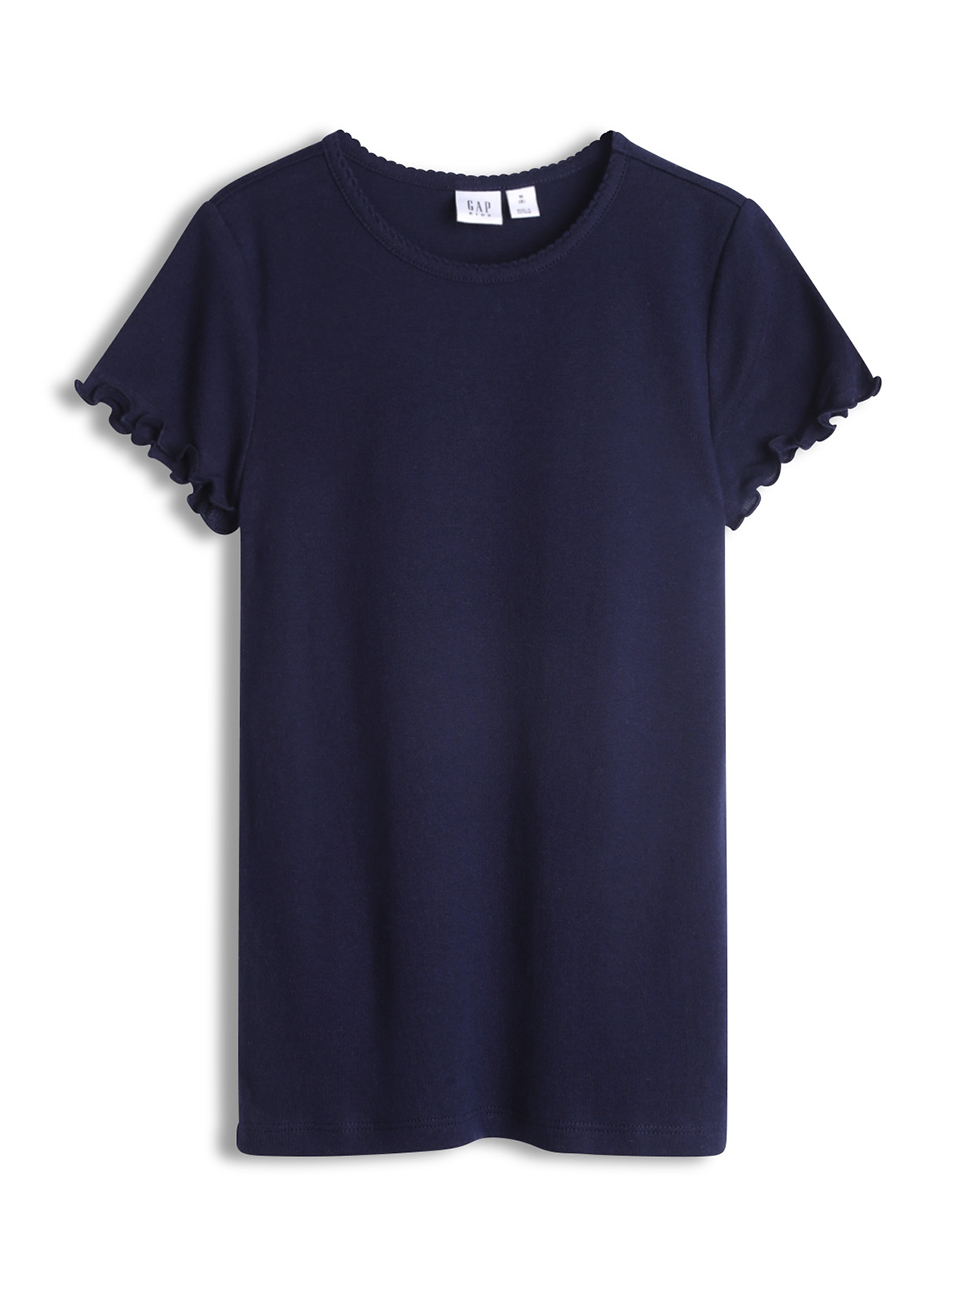 女童裝|荷葉邊圓領短袖T恤-海軍藍色